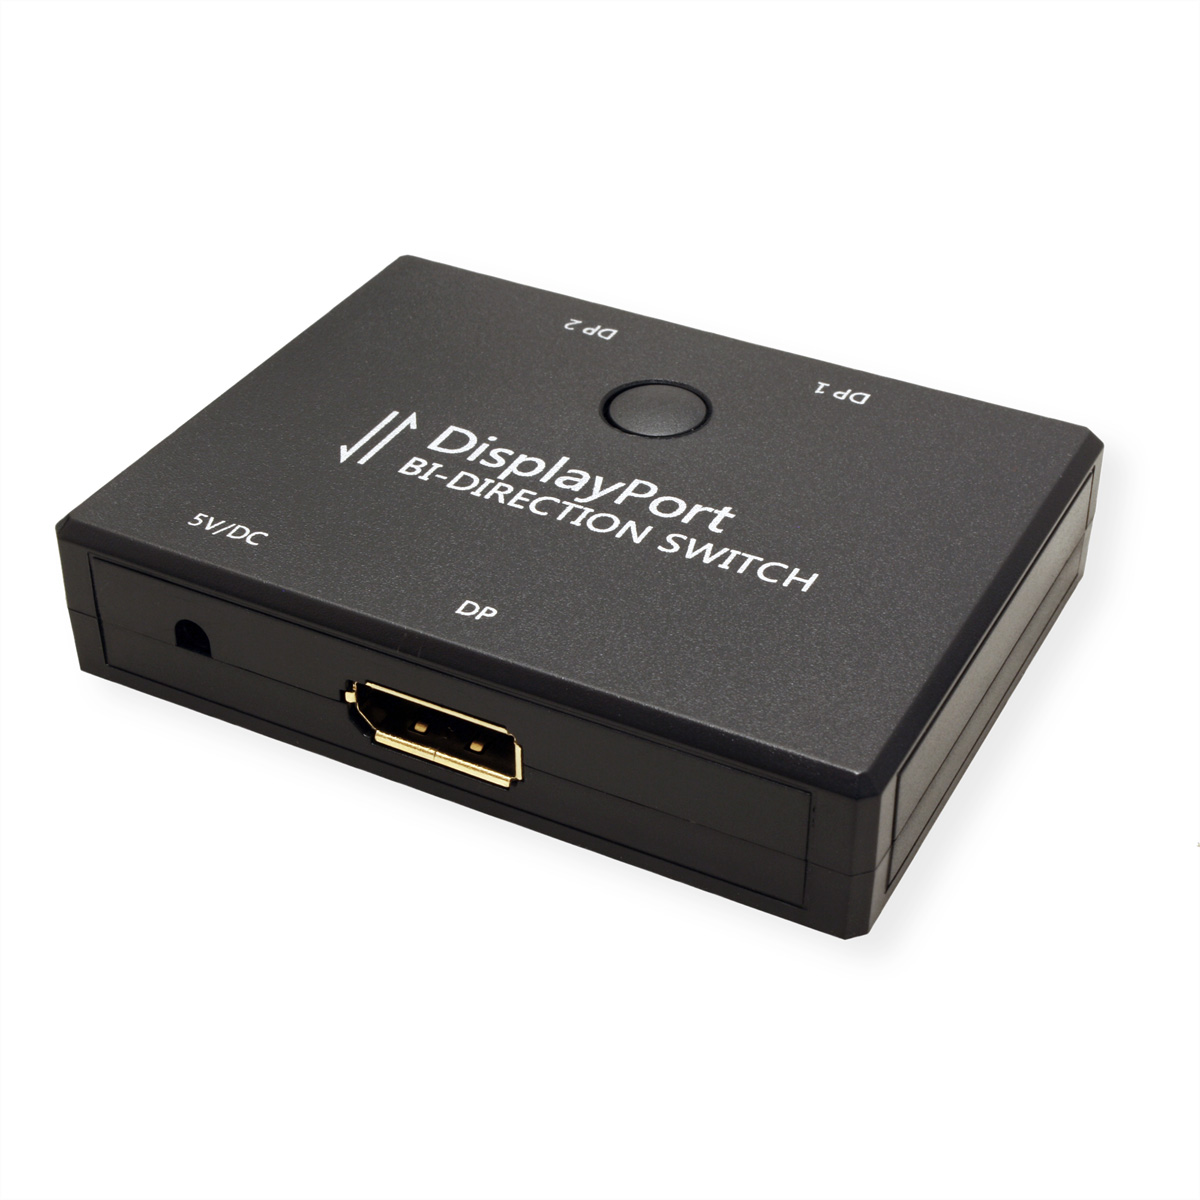 VALUE 4K DisplayPort DP-Video-Switch bidirektional Switch, 2fach